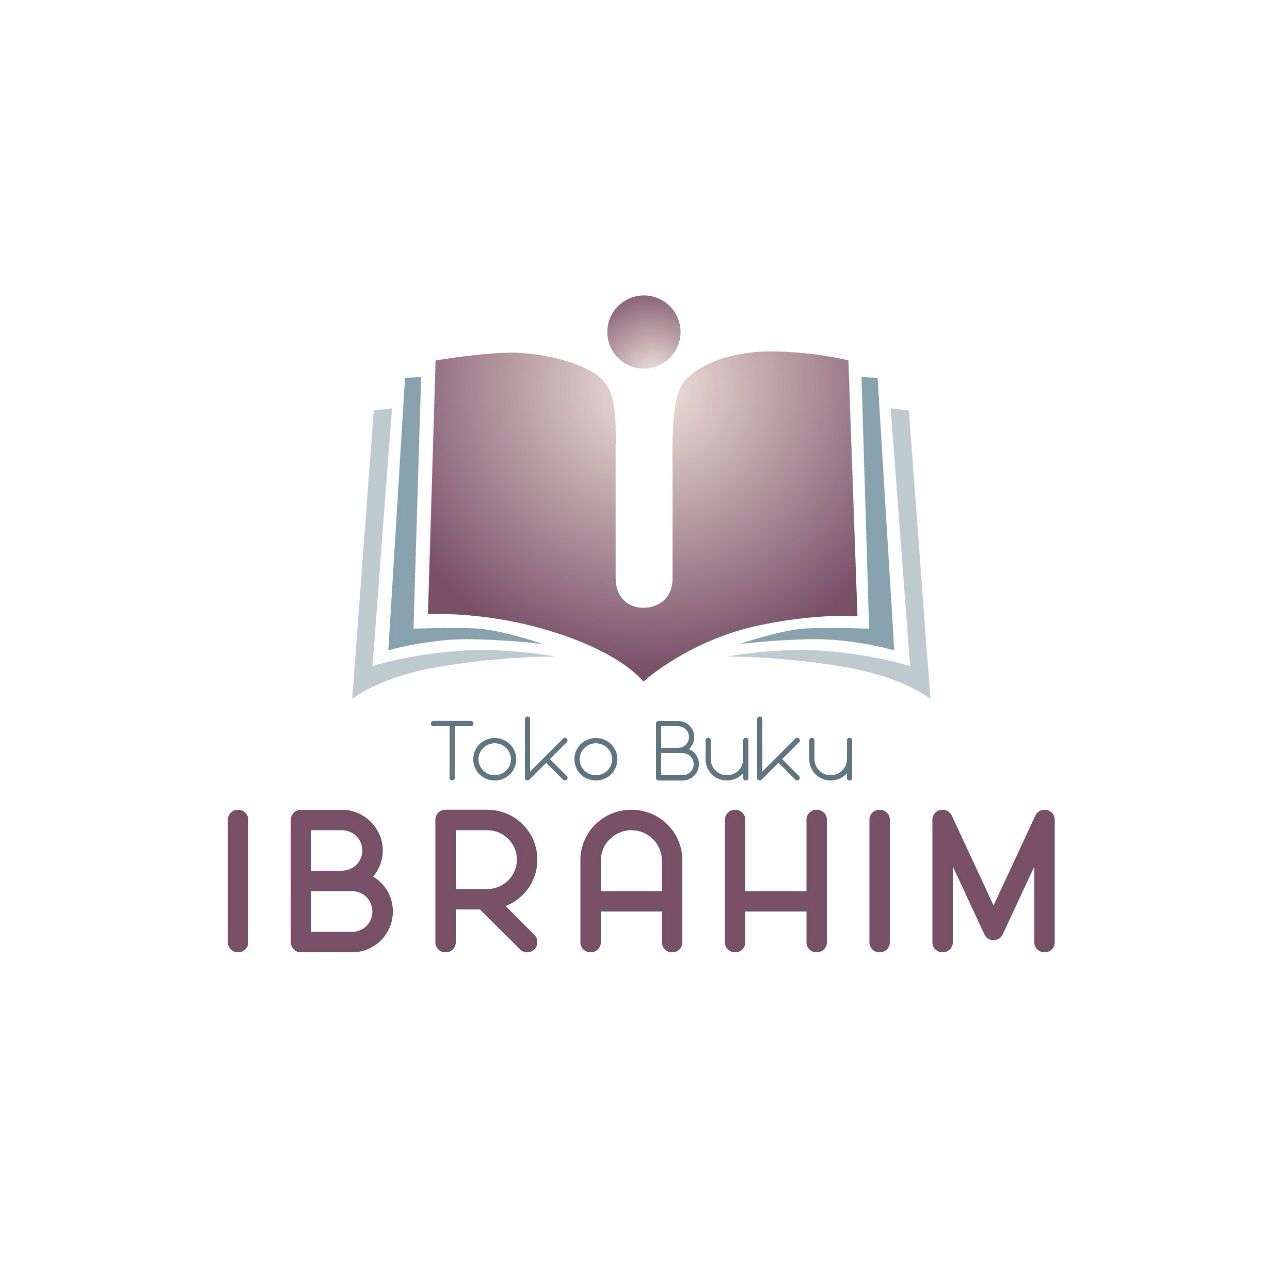 Toko Buku Ibrahim